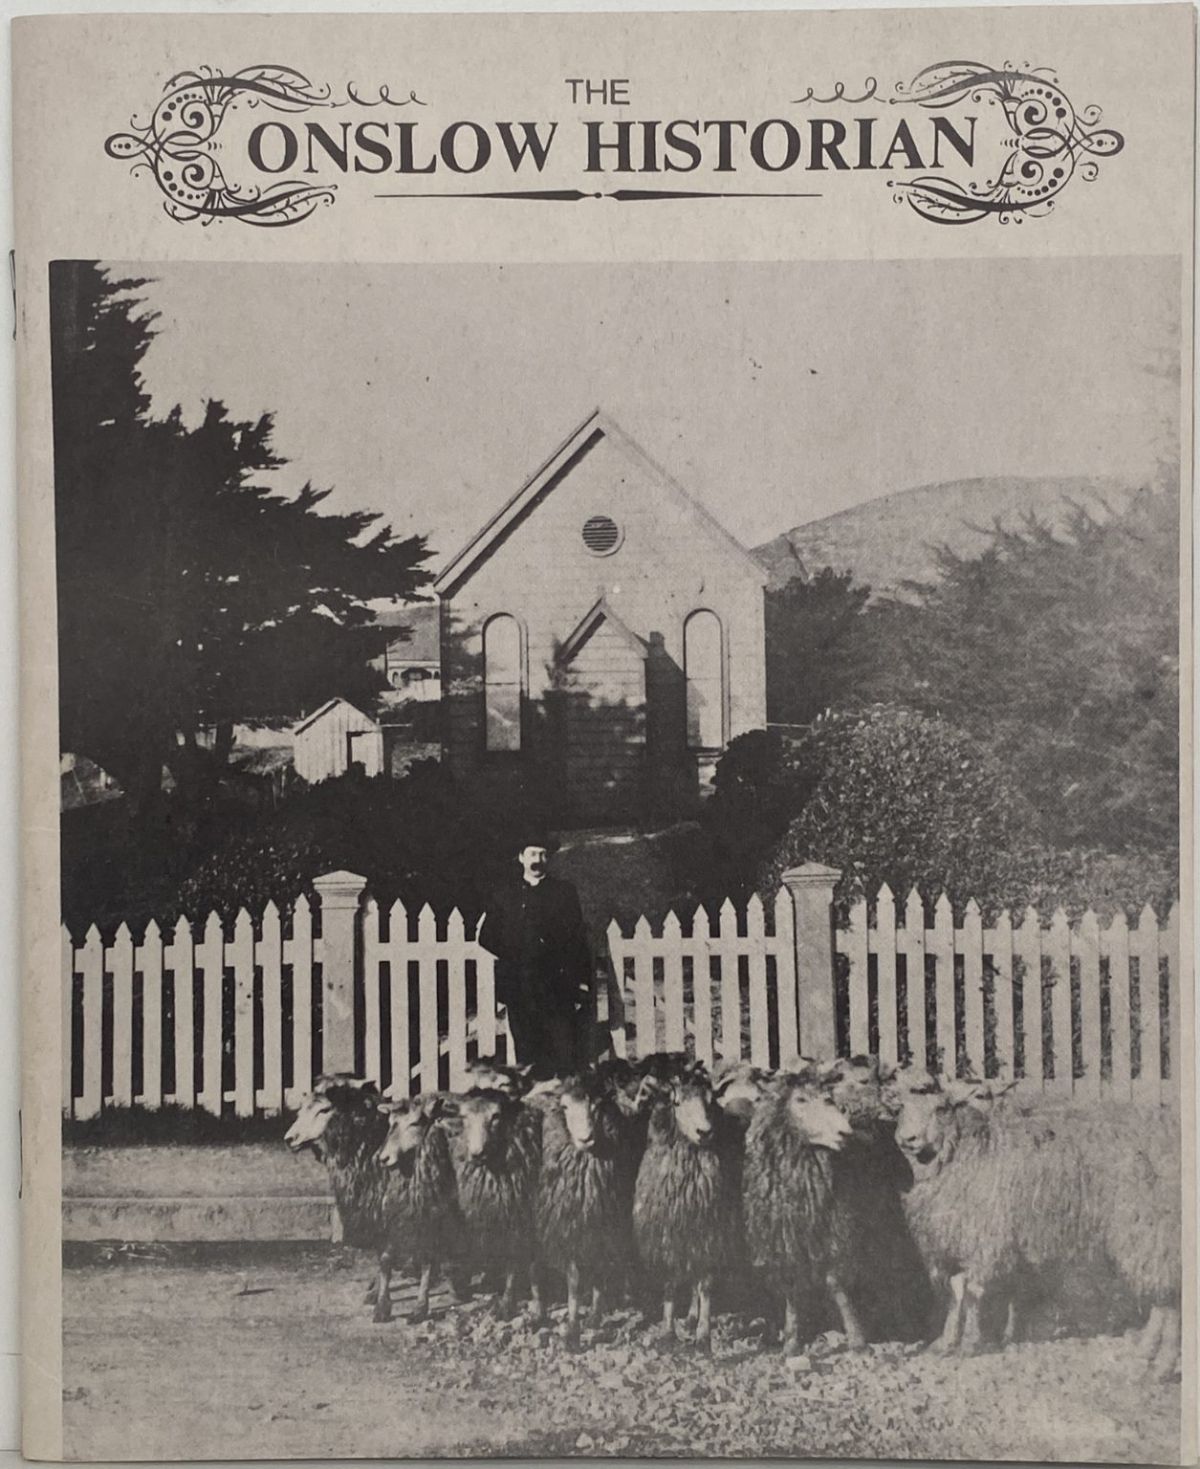 THE ONSLOW HISTORIAN: Vol. 4 - No. 4, 1974